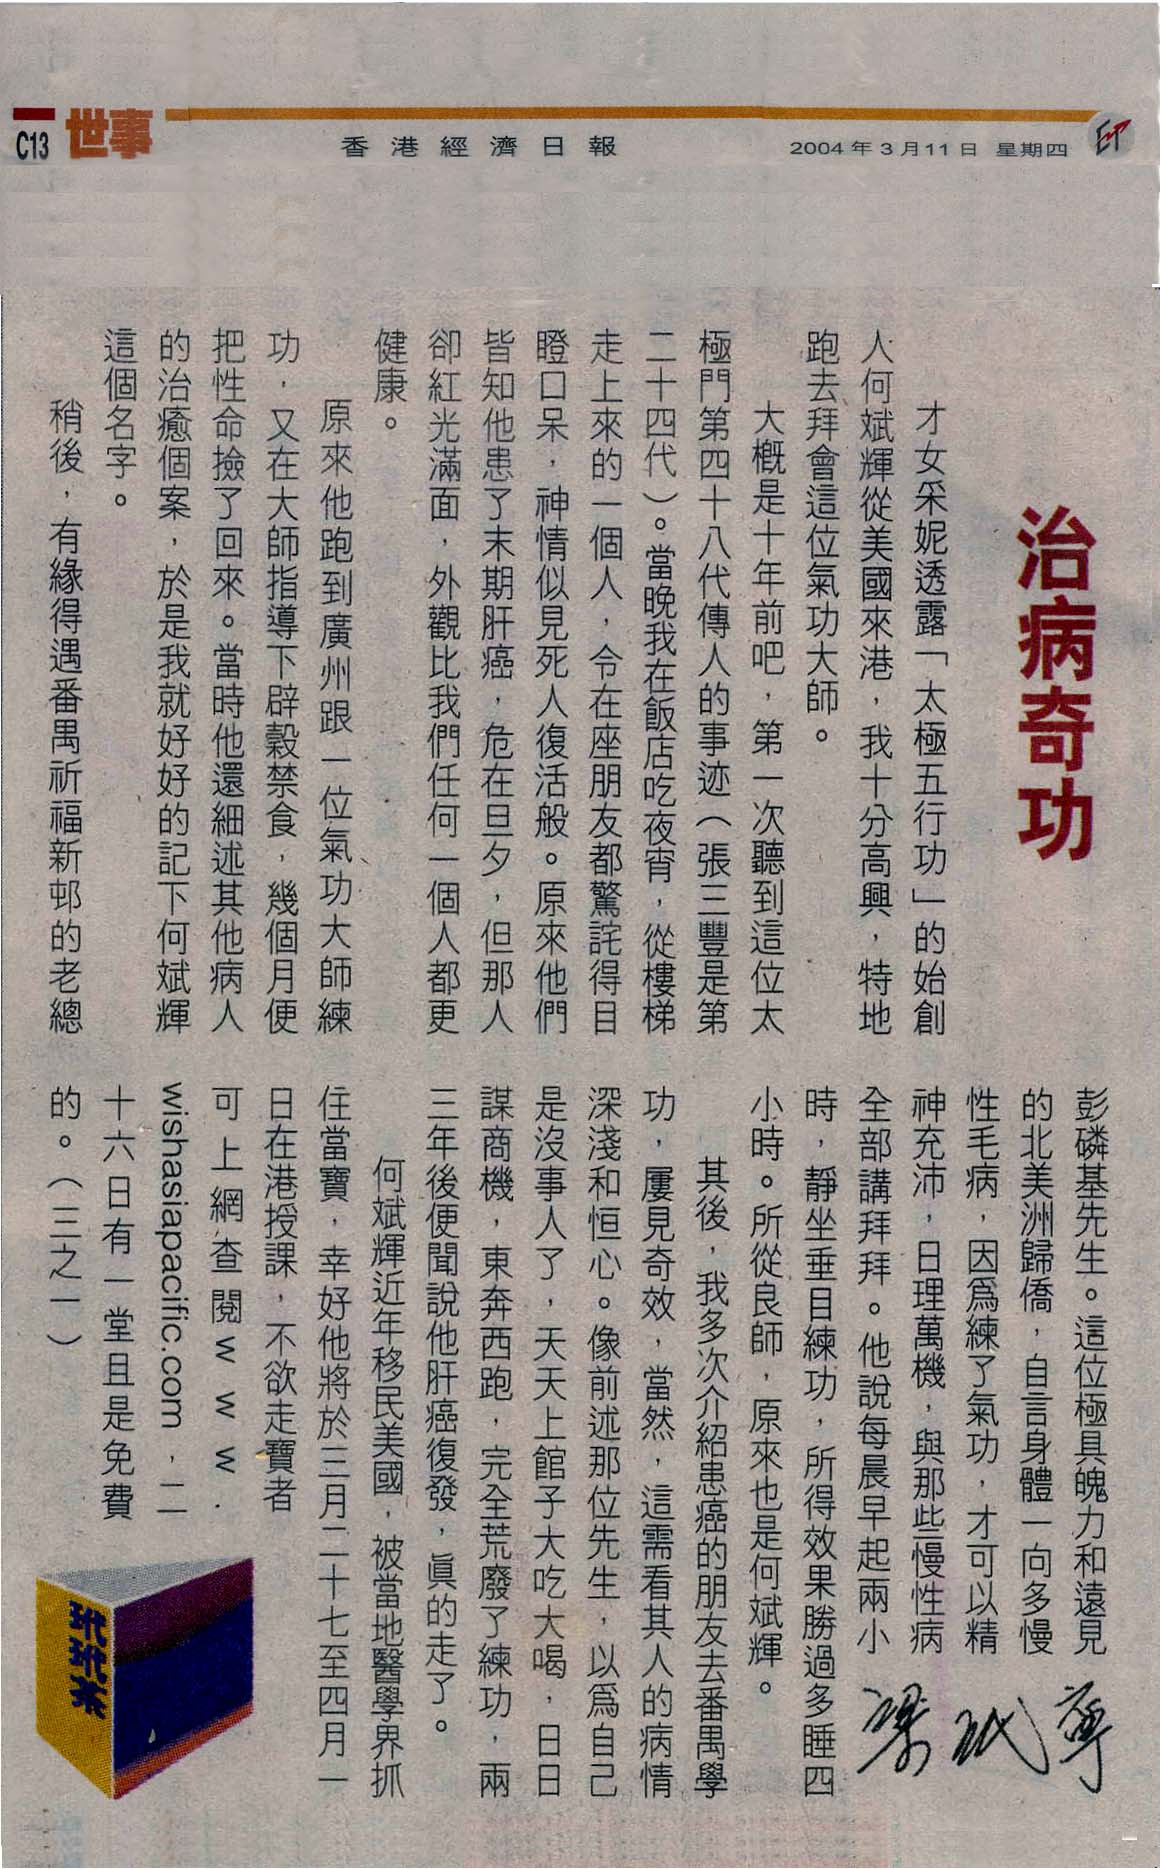 香港經濟日報︰2004年3月11日 (治病奇功)